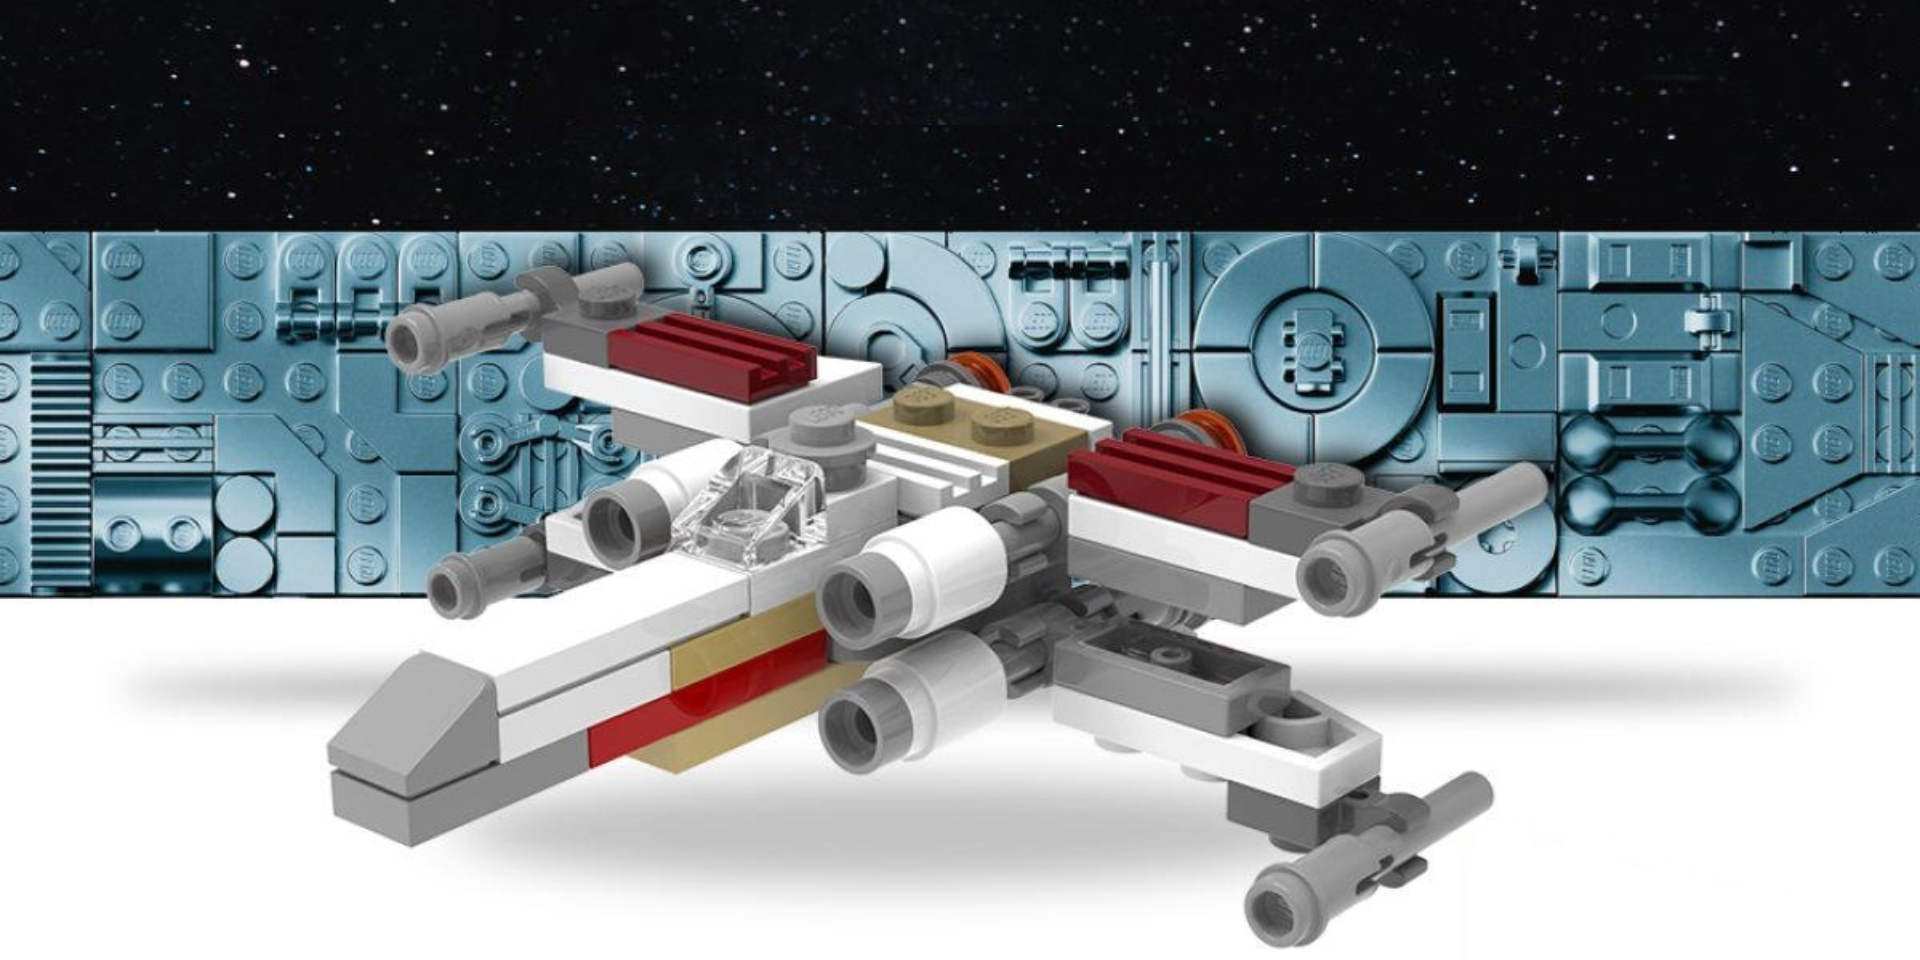 TALLER LEGO MAKE & TAKE STAR WARS